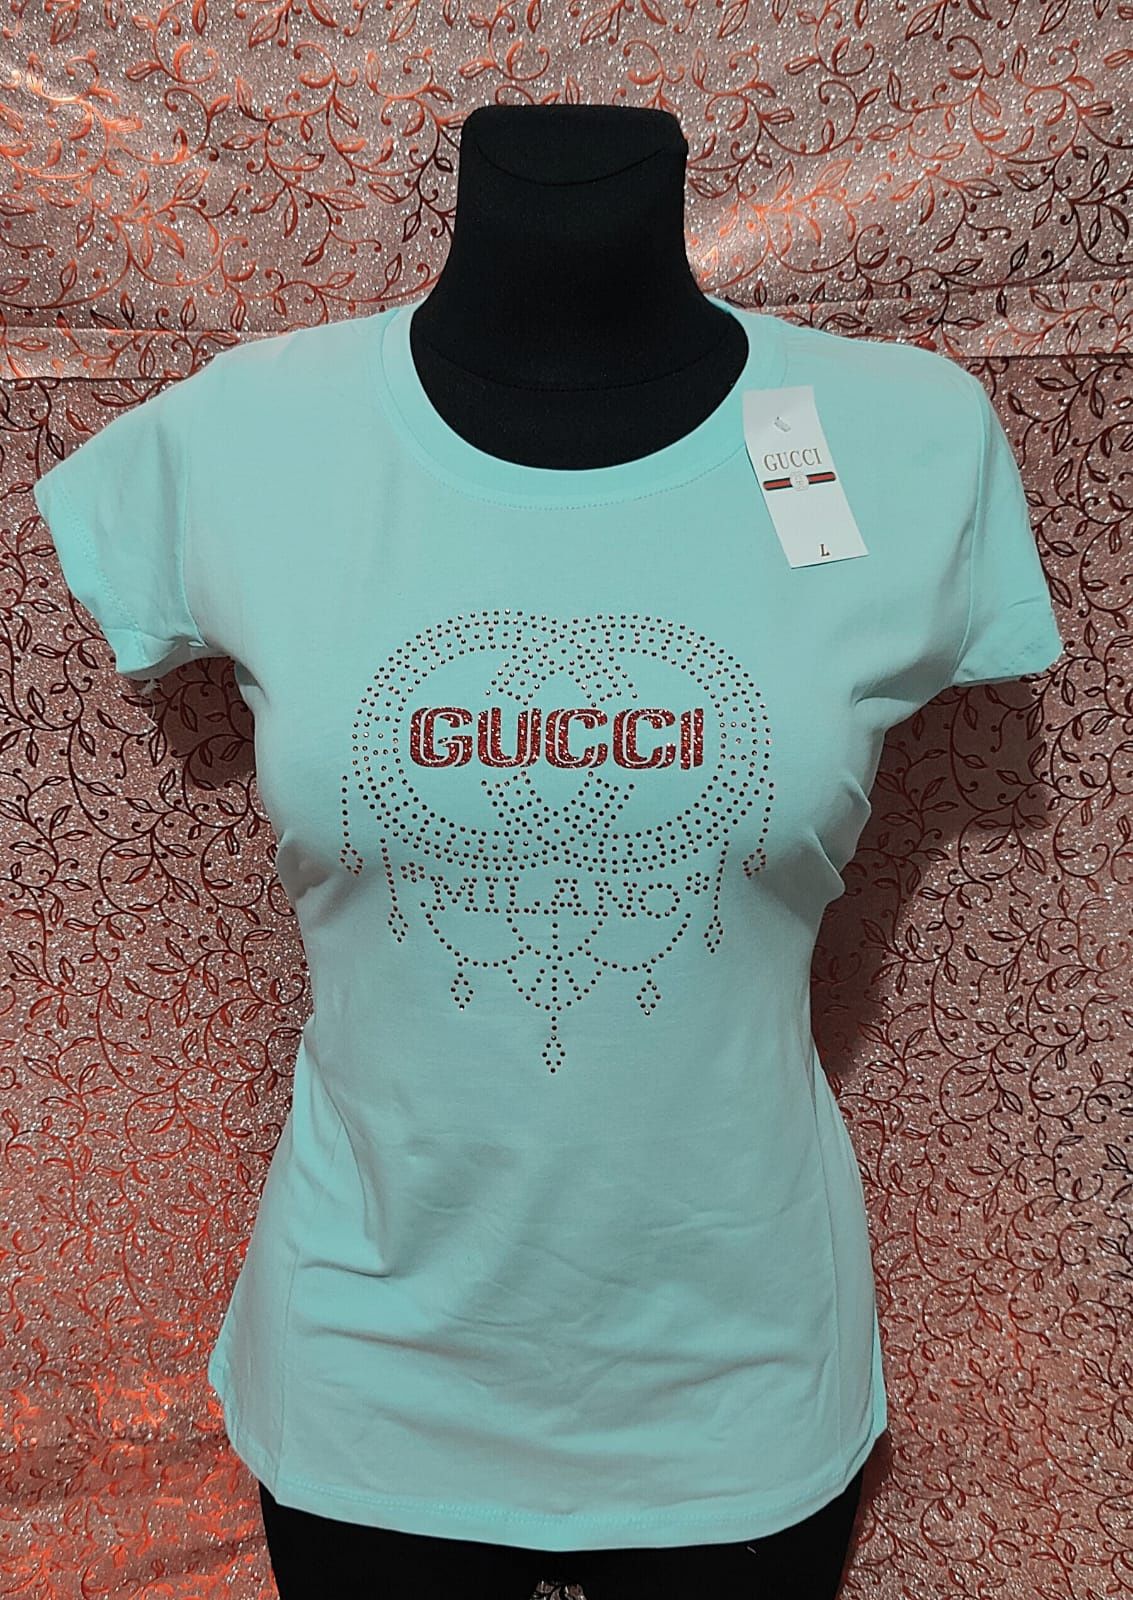 Niebieska koszulka damska Gucci S M L XL wysyłka pobranie bardzo ładna